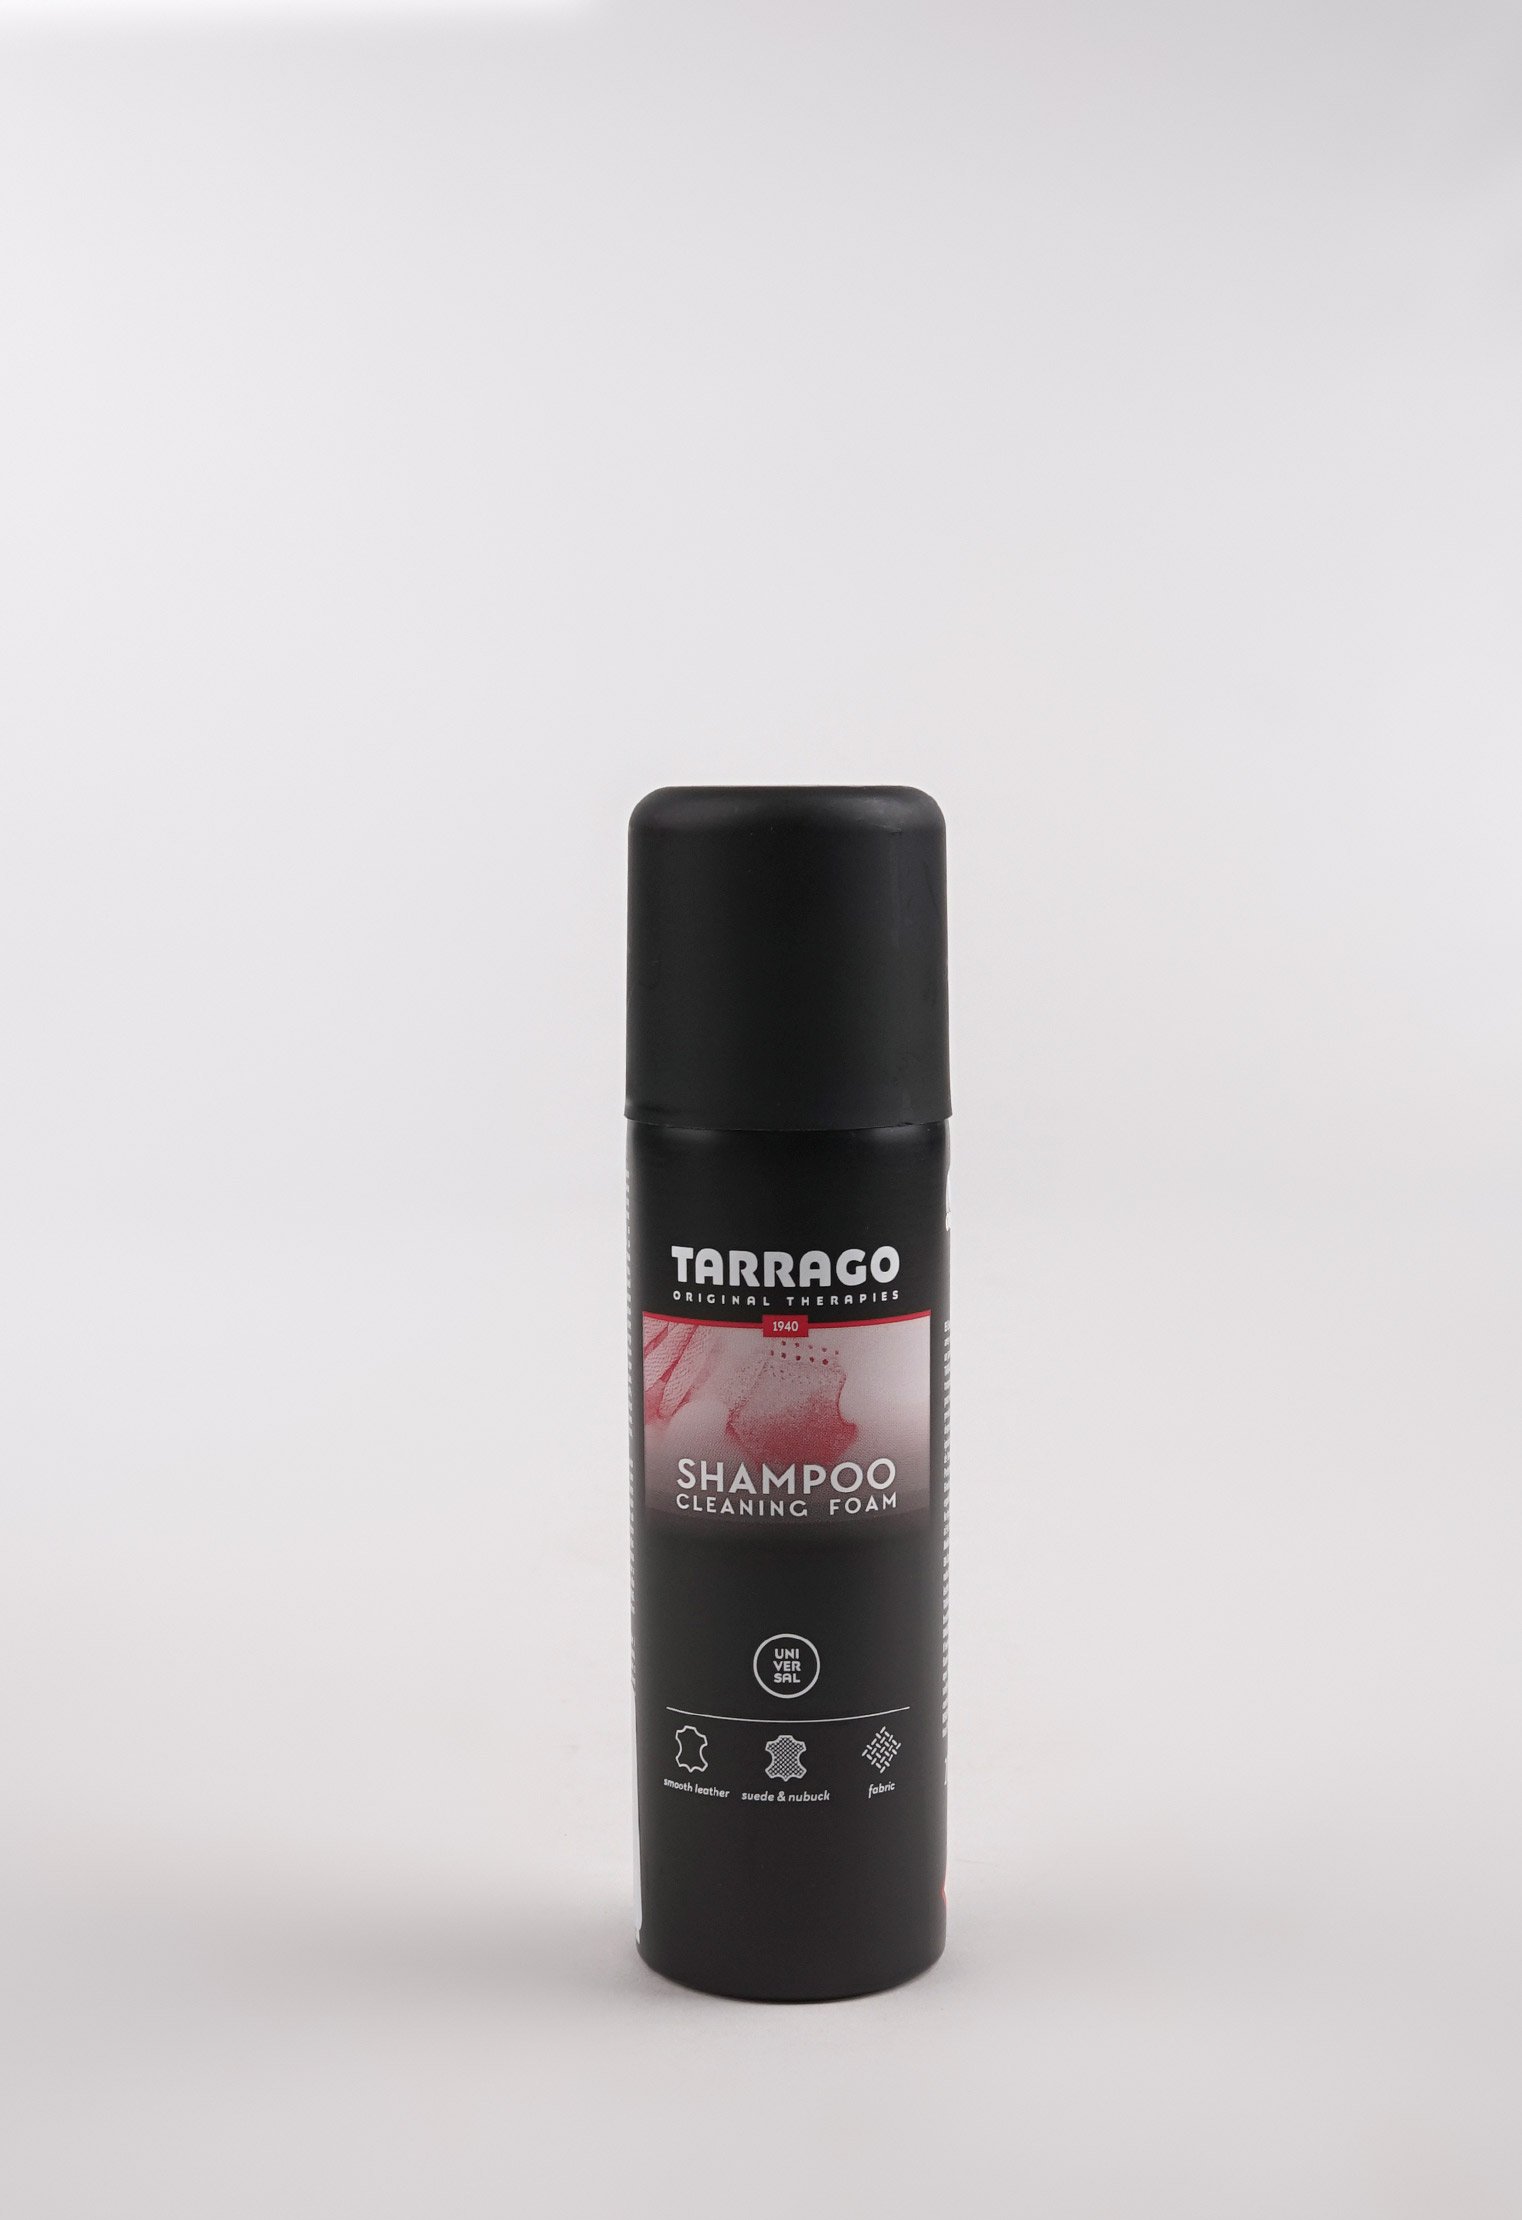 Шампуни и очистители 20-1068 TARRAGO - Пена-шампунь SHAMPOO, 200мл.